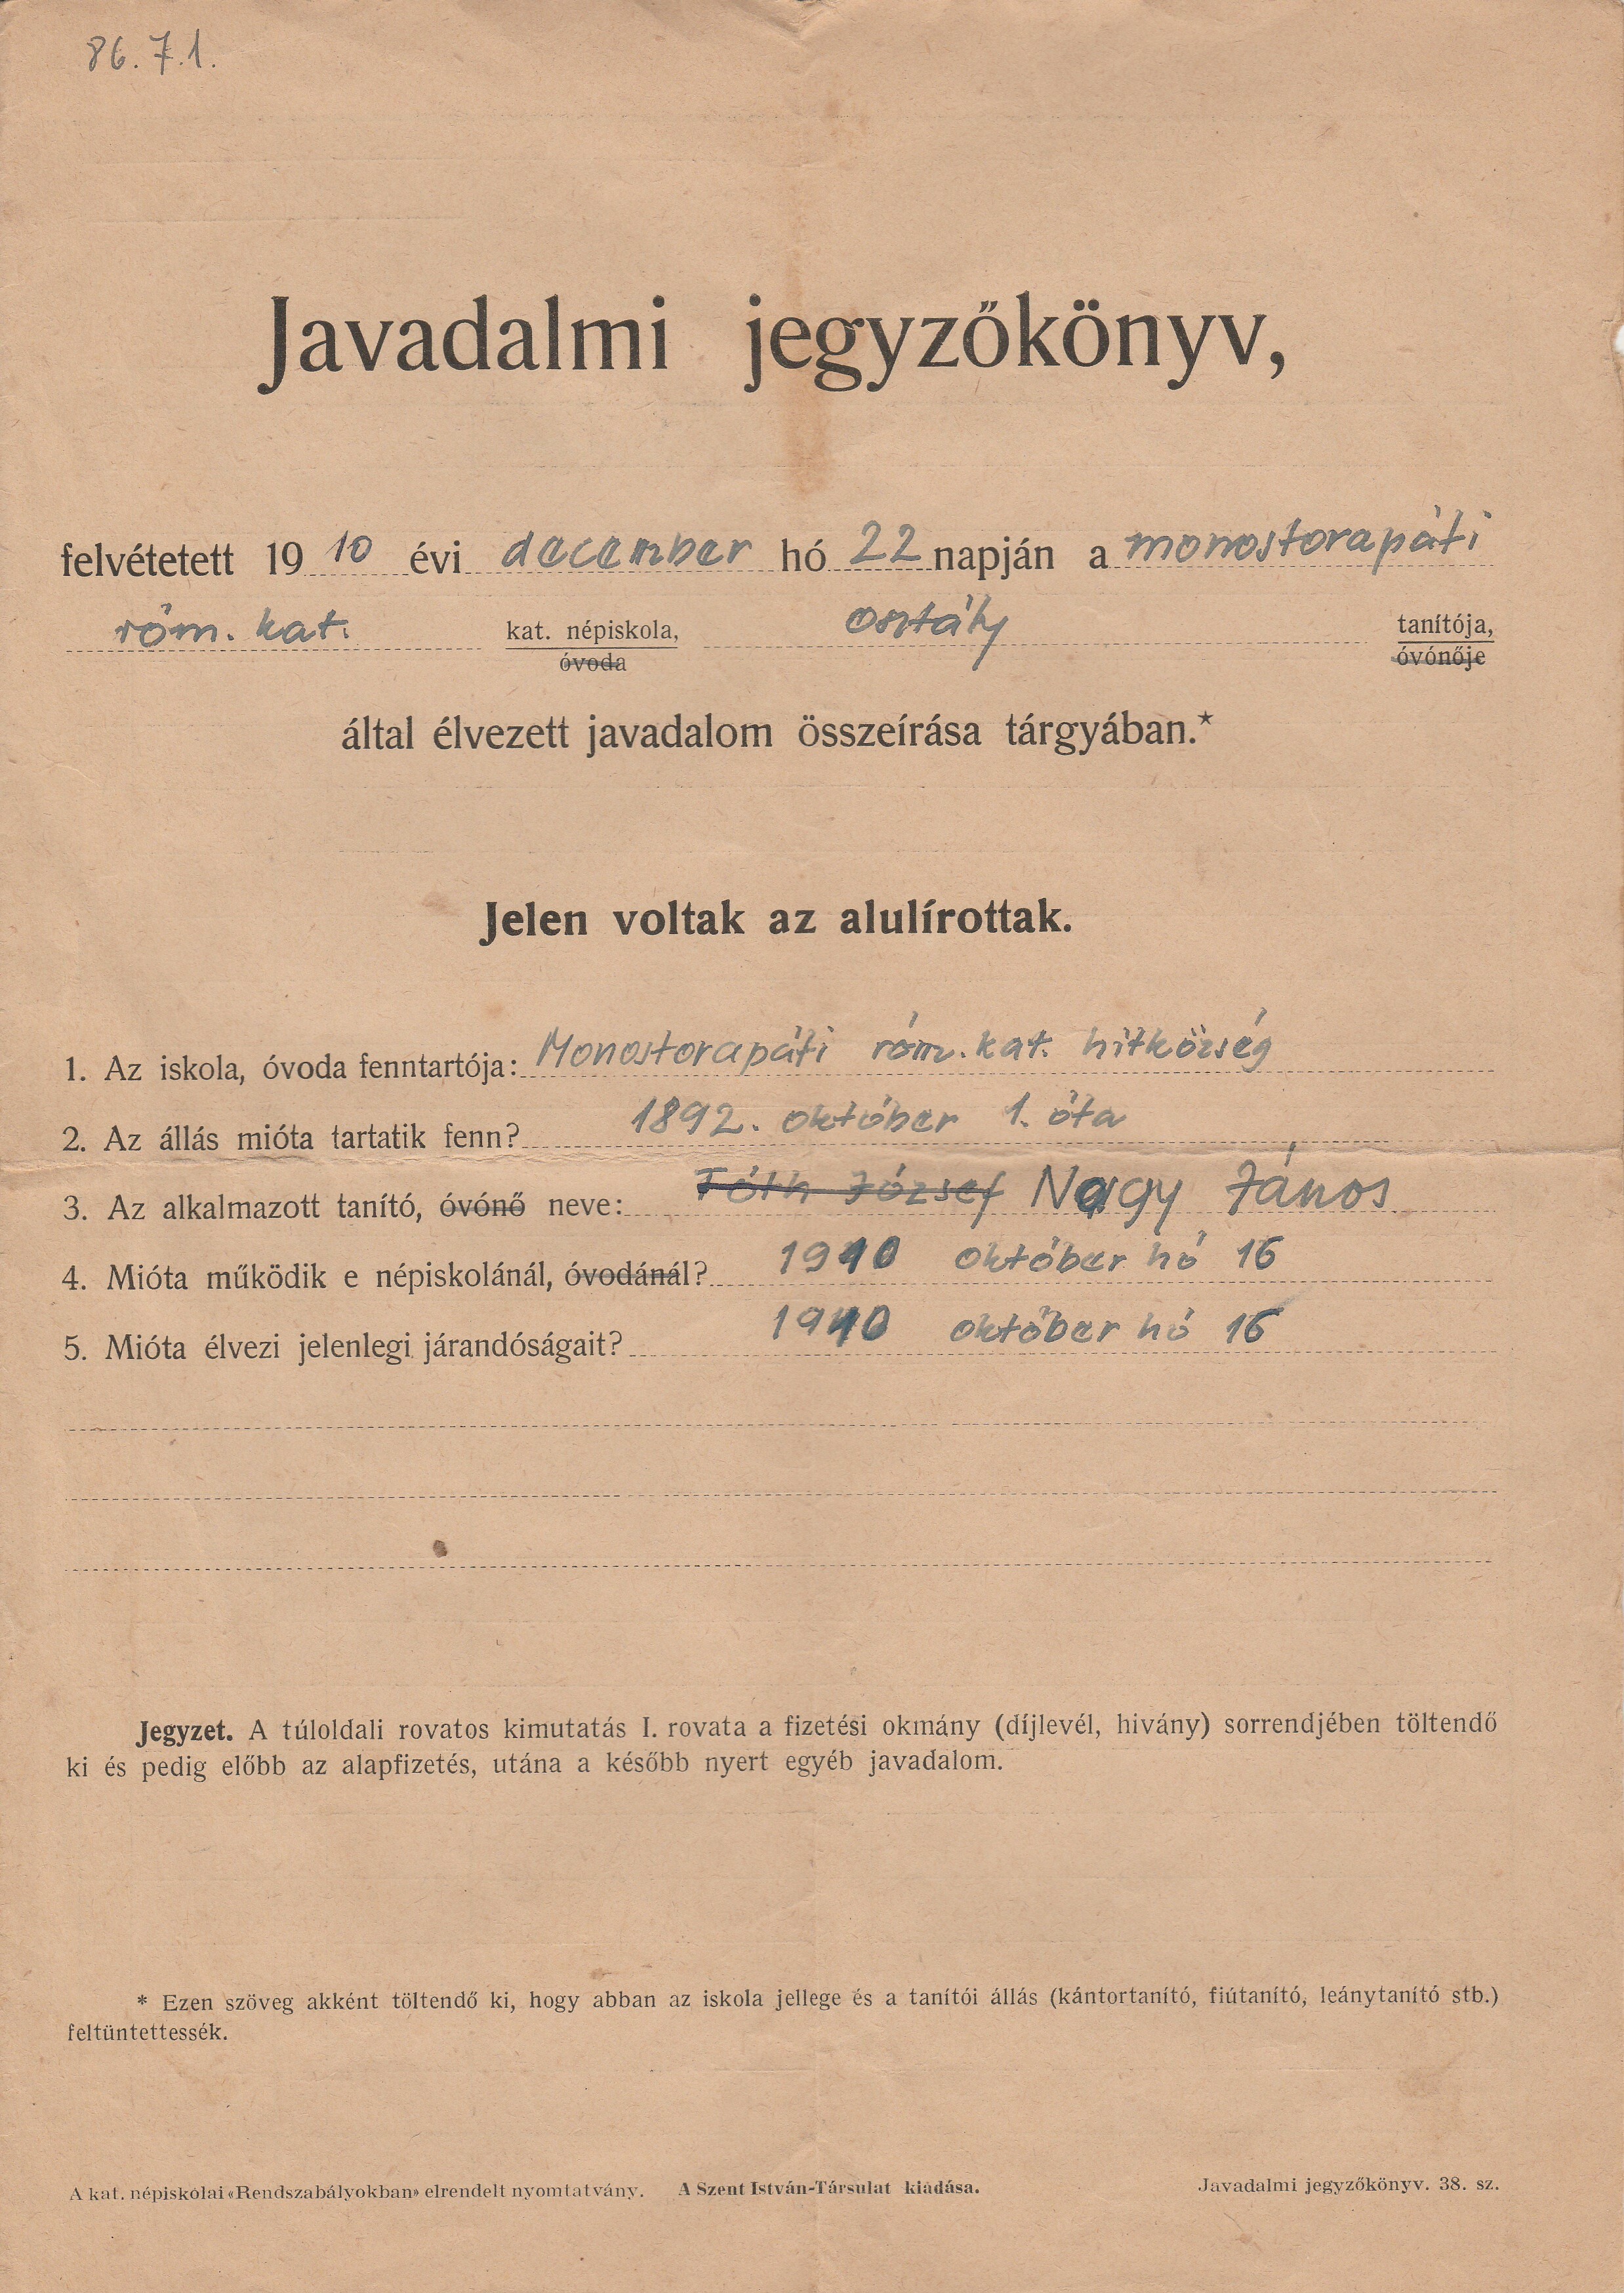 Javadalmi jegyzőkönyv monostorapáti tanító részére (Tapolcai Városi Múzeum CC BY-NC-SA)